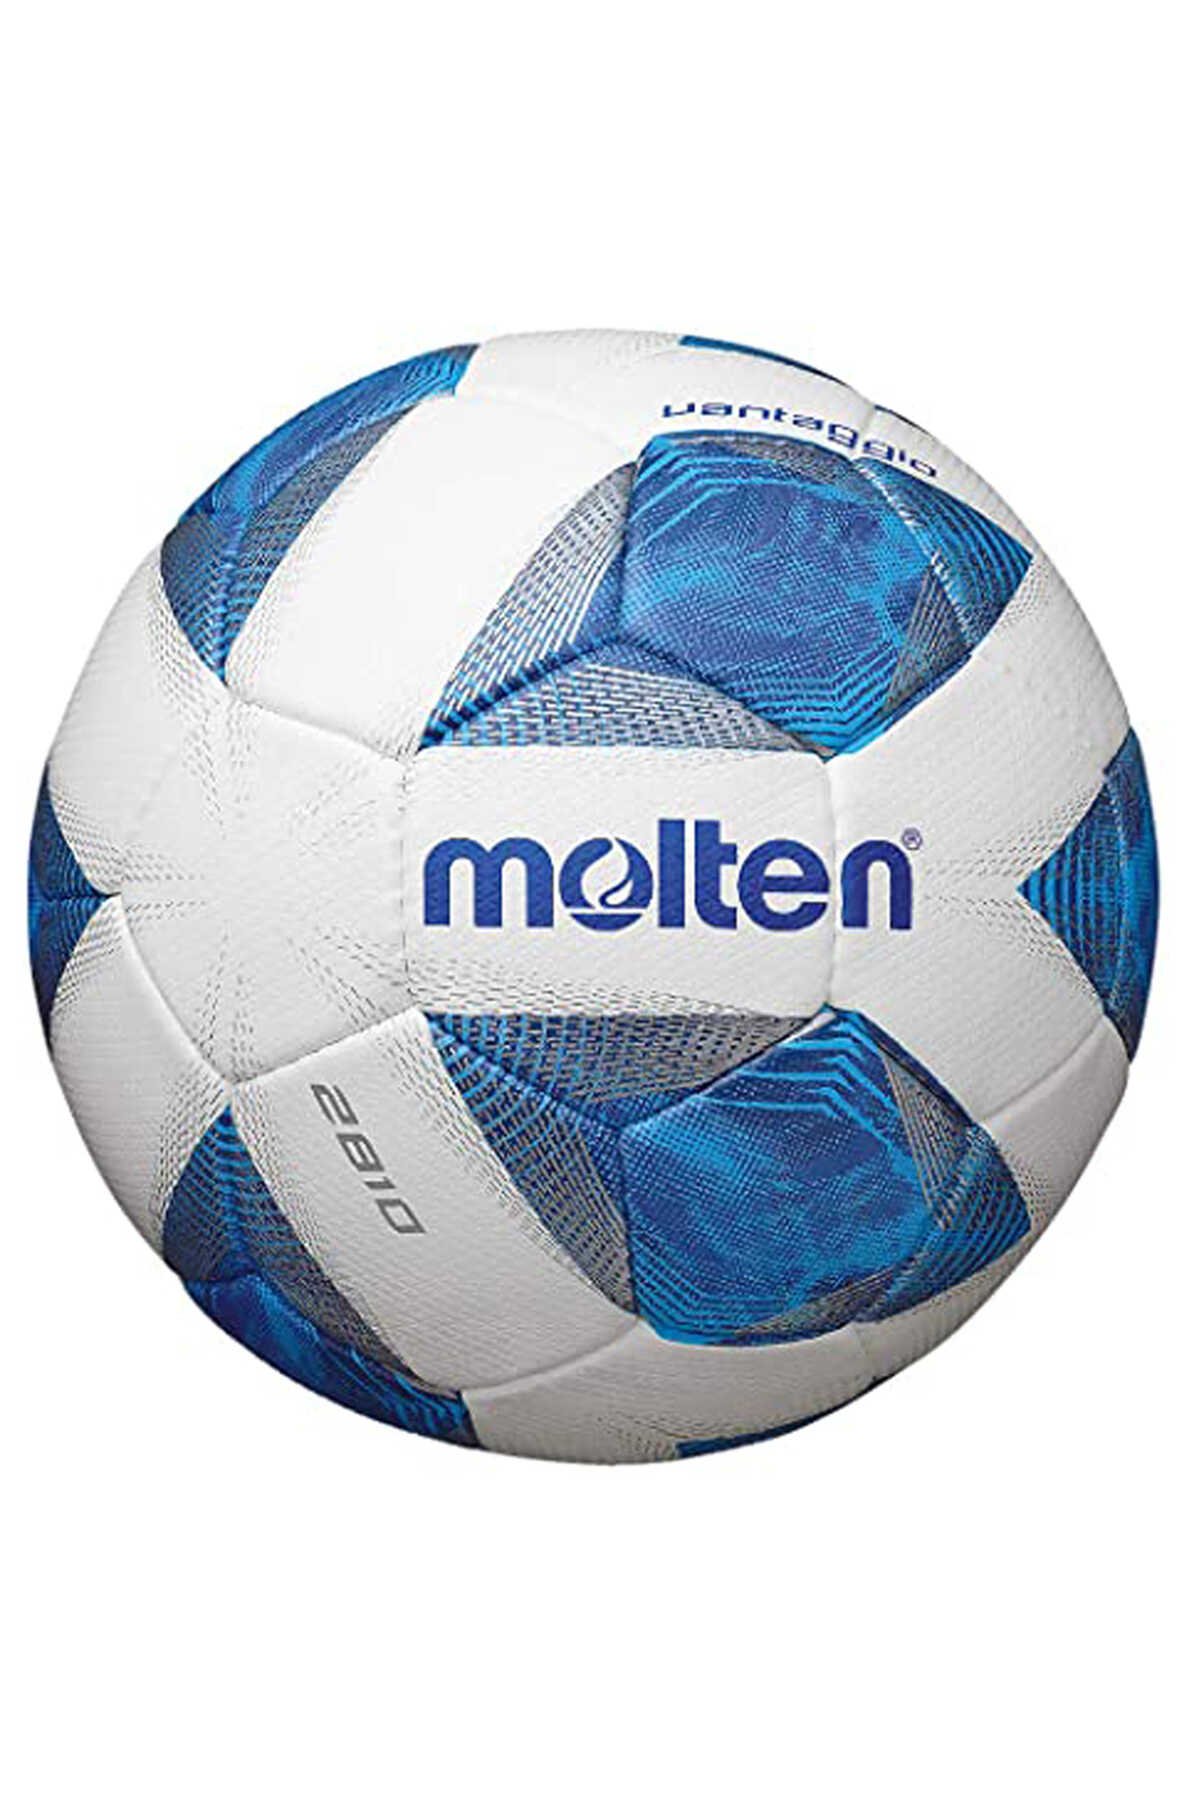 Molten - Molten 5 Numara Futbol Topu Mavi / Beyaz